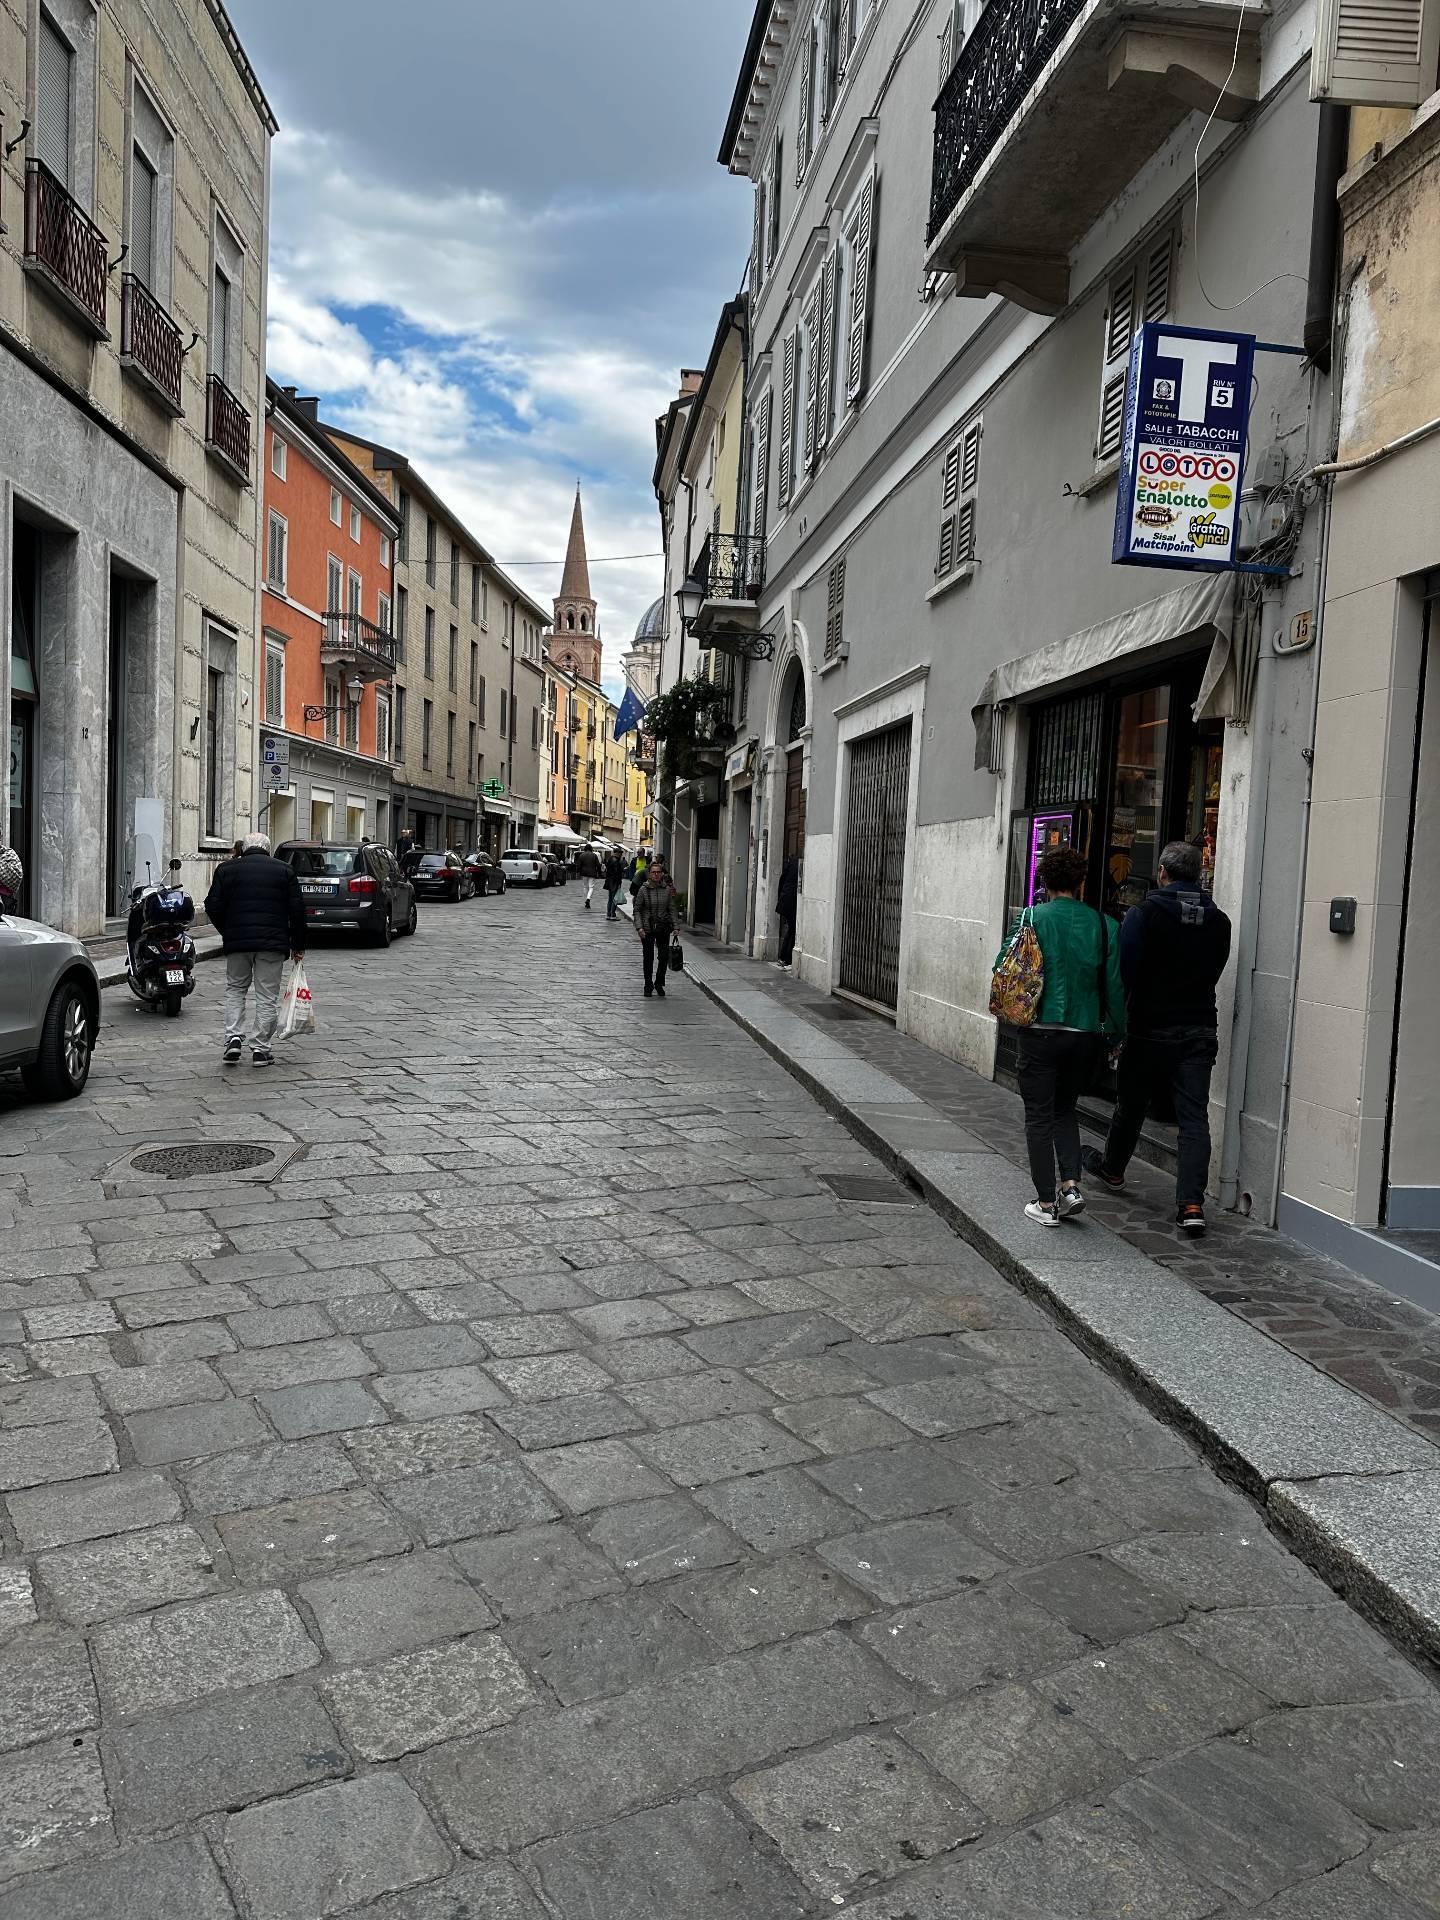 Locale commerciale in affitto, Mantova centro storico